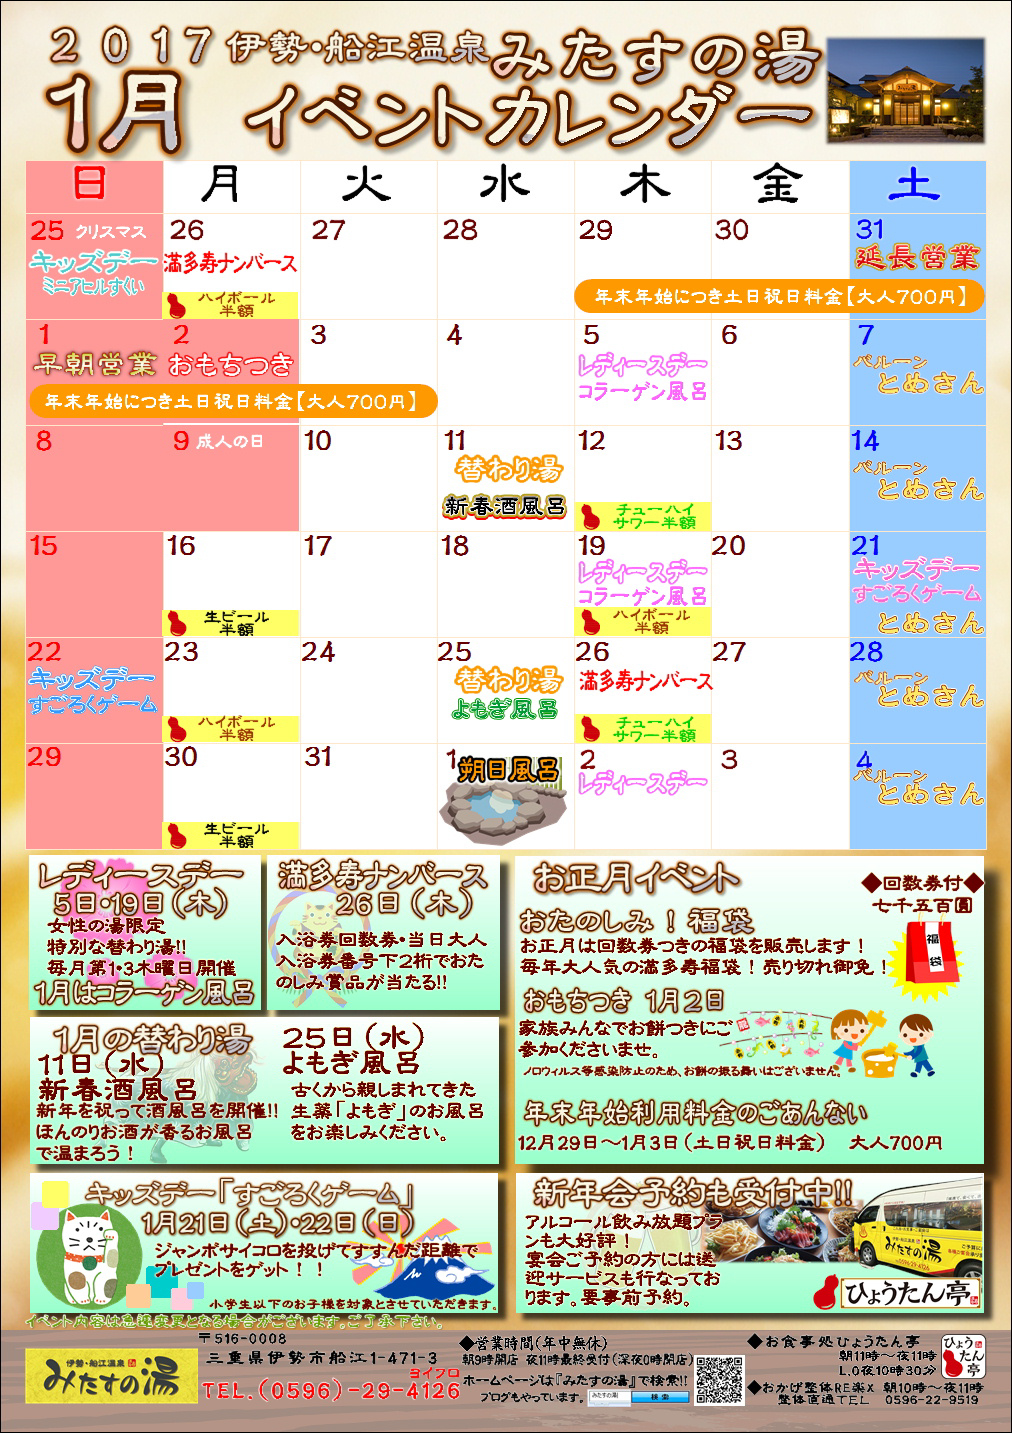 17年1月のイベントカレンダー 三重県伊勢市のスーパー銭湯 伊勢 船江温泉 みたすの湯